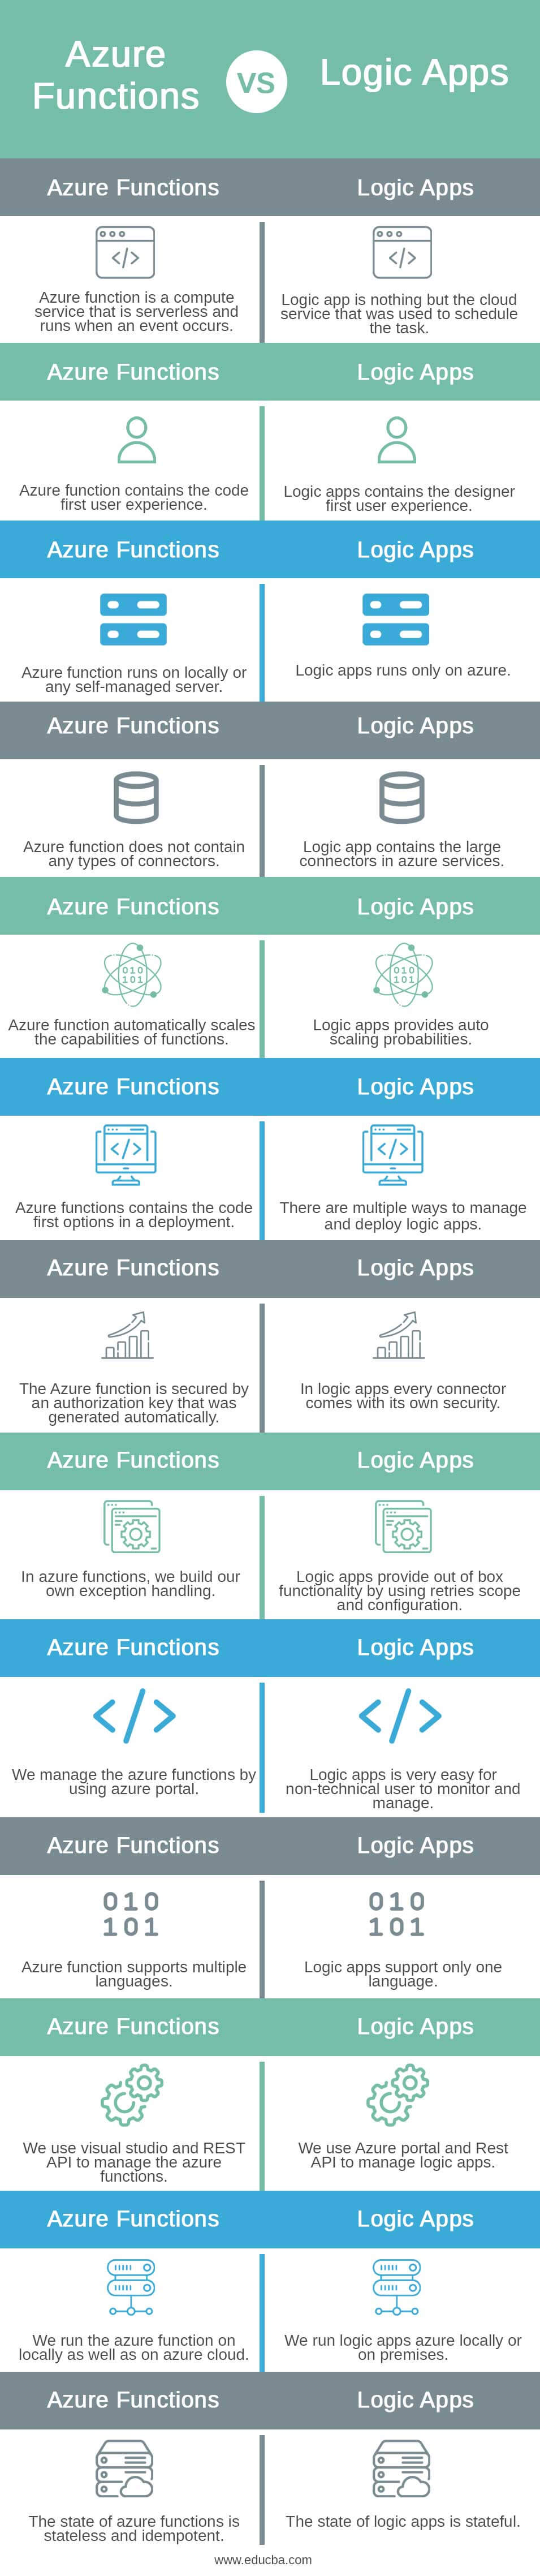 Azure-Functions-vs-Logic-Apps-info